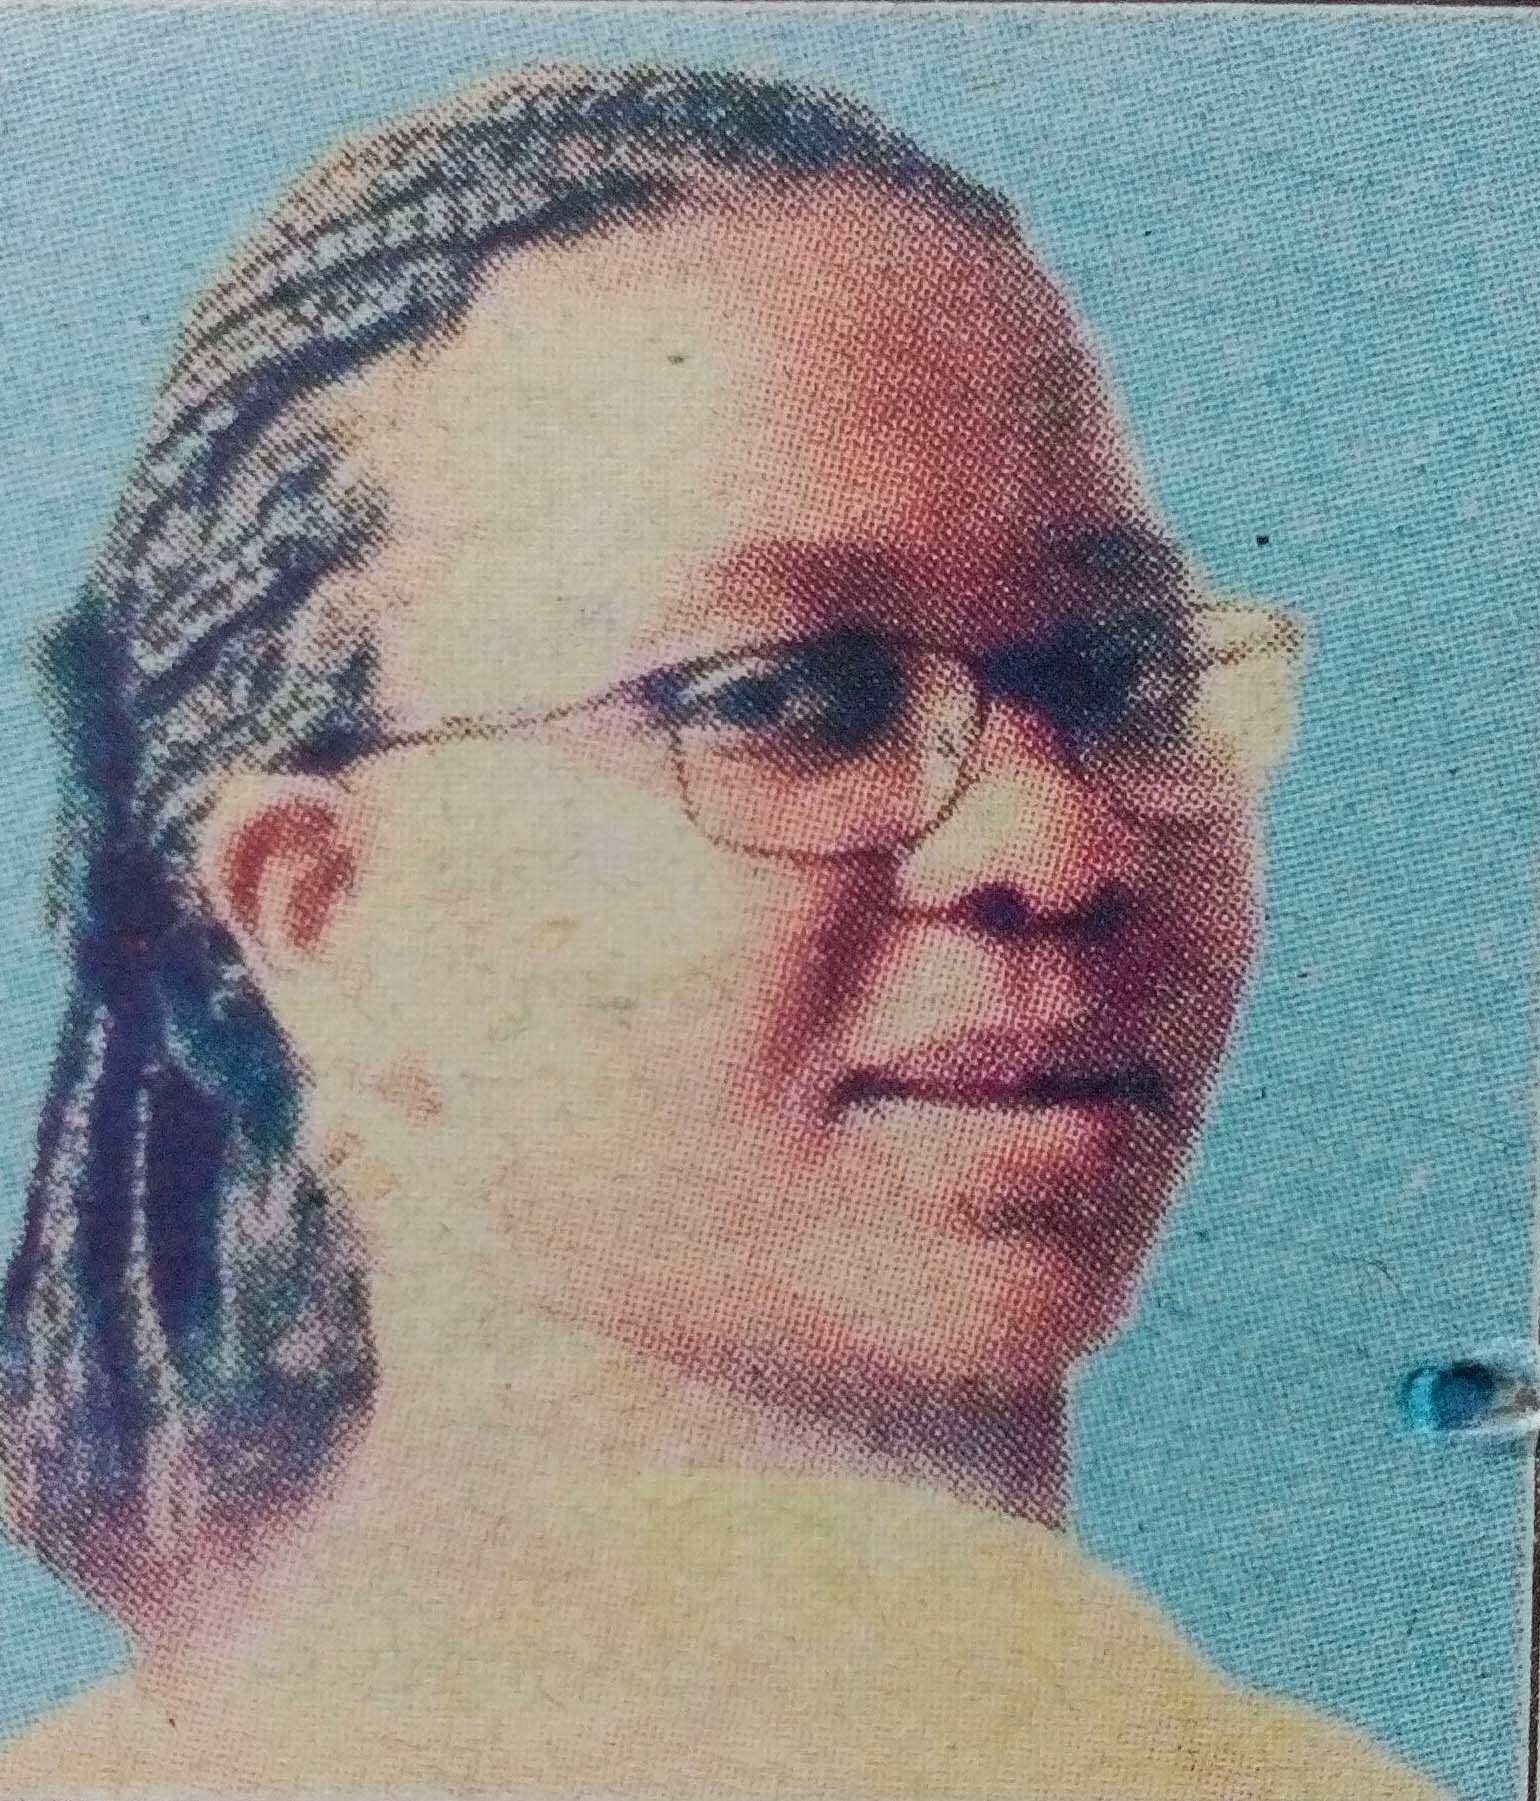 Obituary Image of Clara Wawuda Mawalla